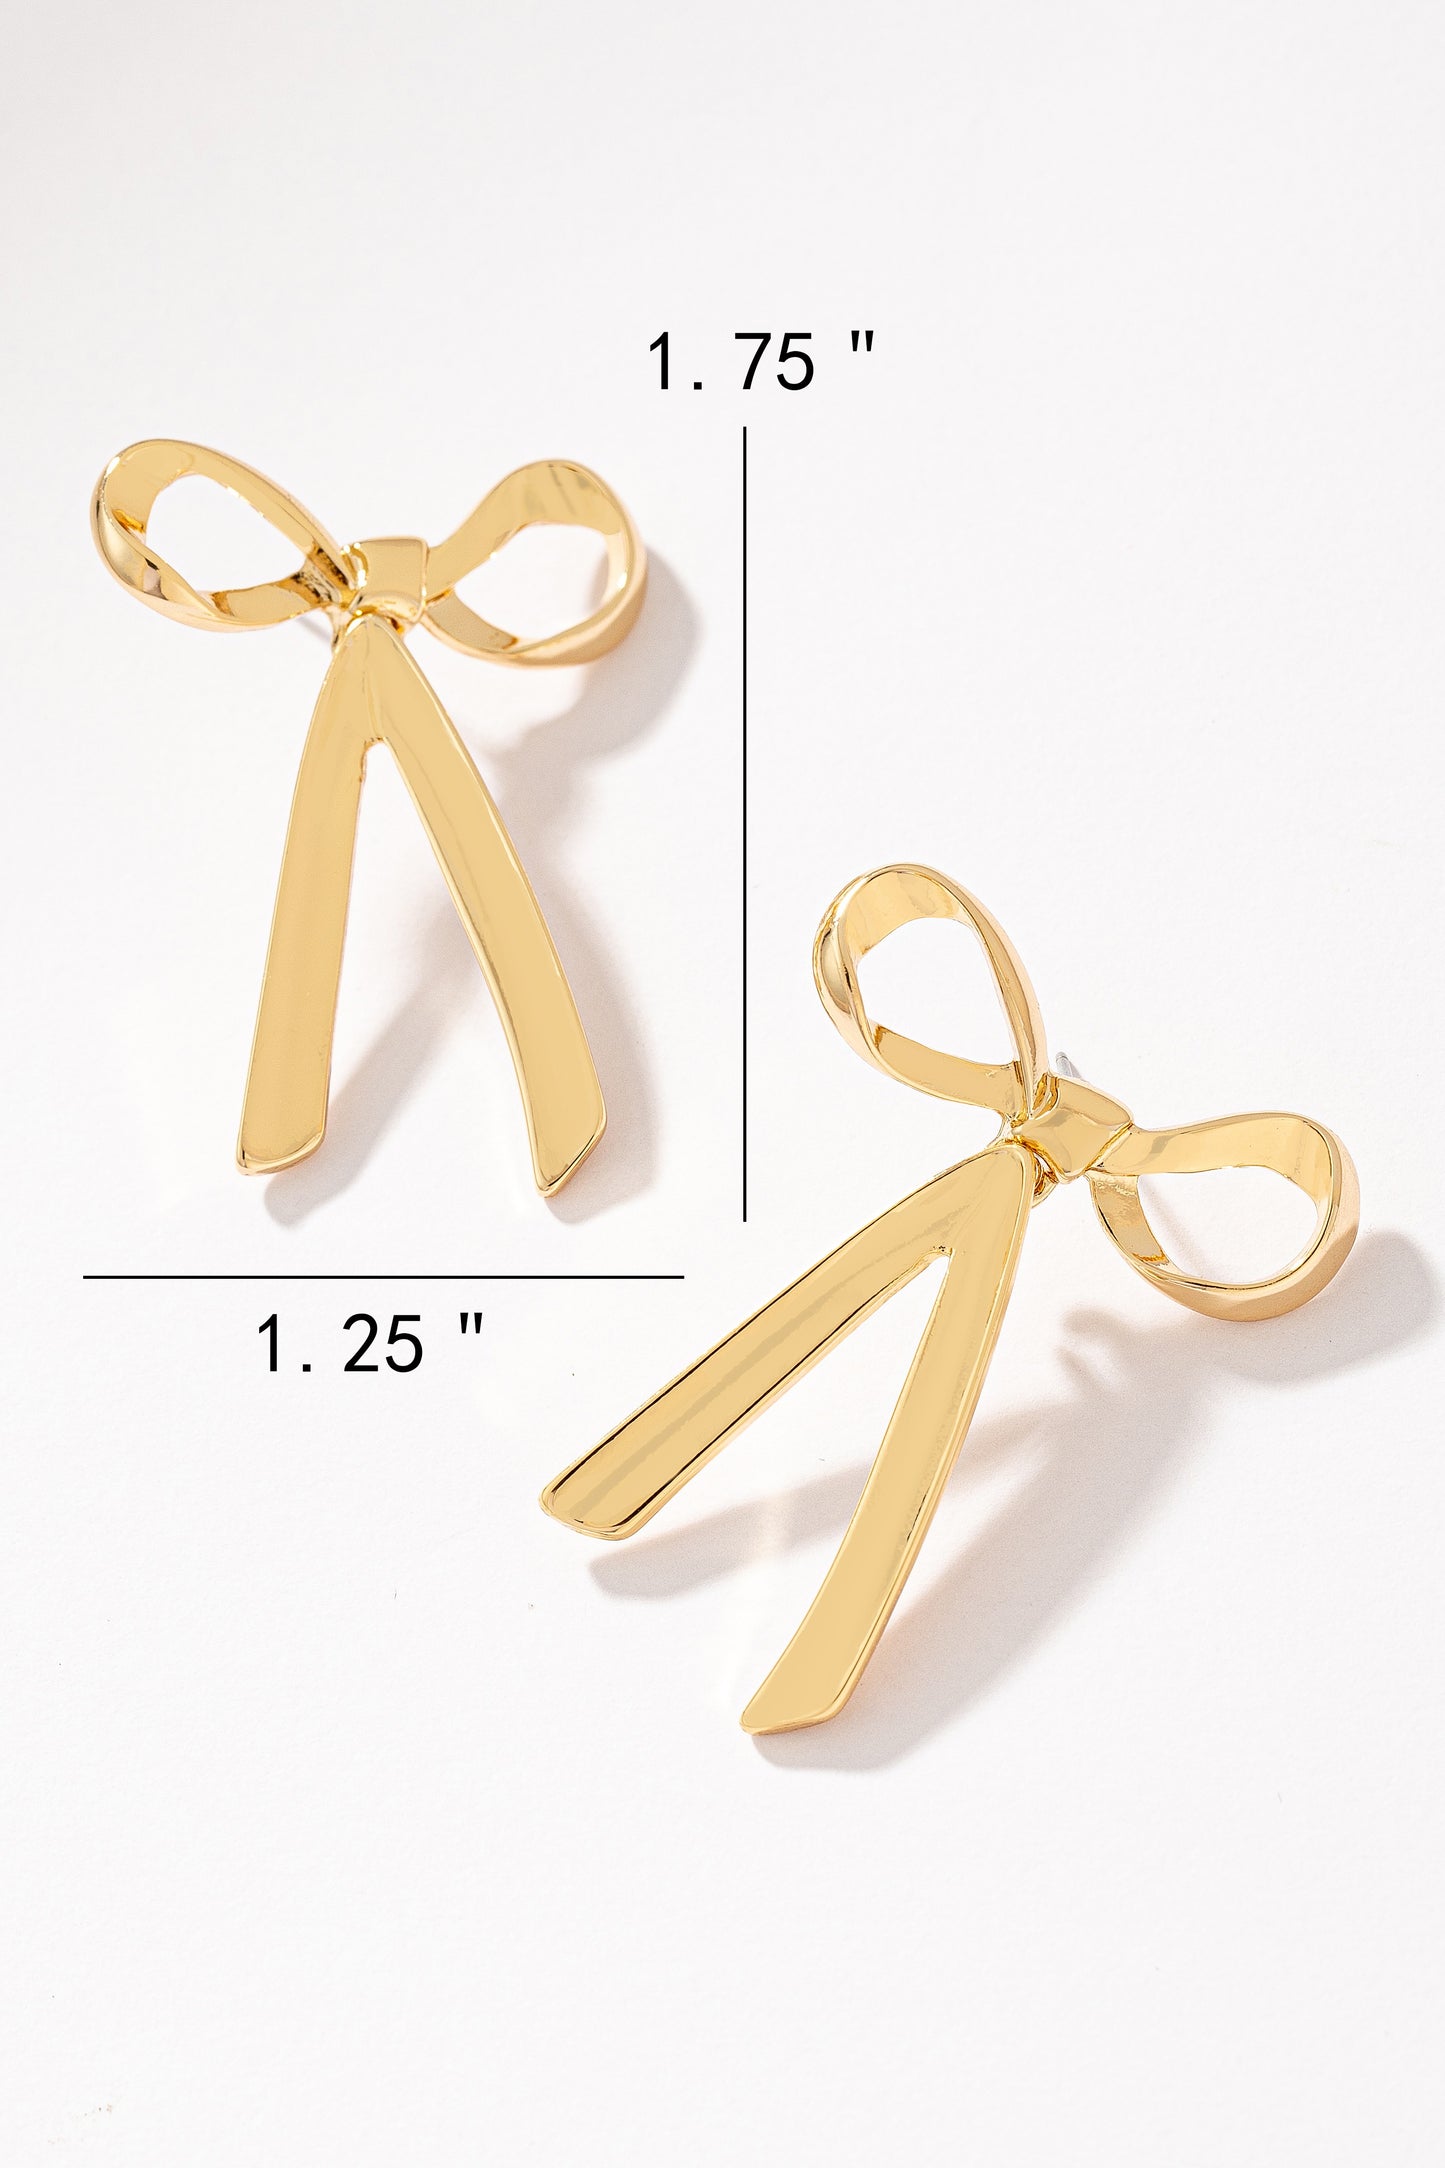 Gold/Silver Bow Tie Earrings